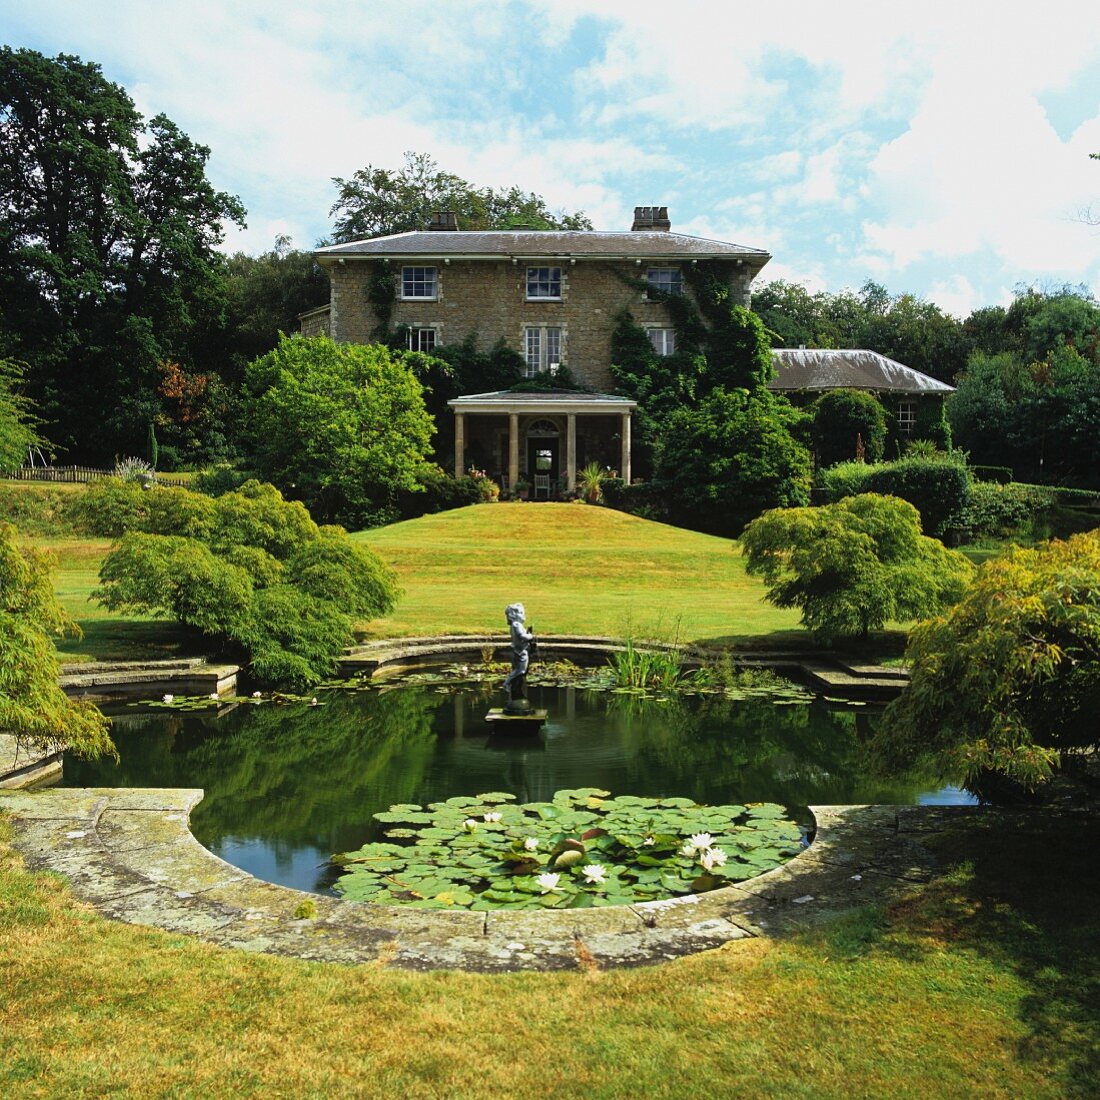 Parkähnlich angelegter Garten mit Teich vor herrschaftlichem Landhaus in sommerlicher Stimmung